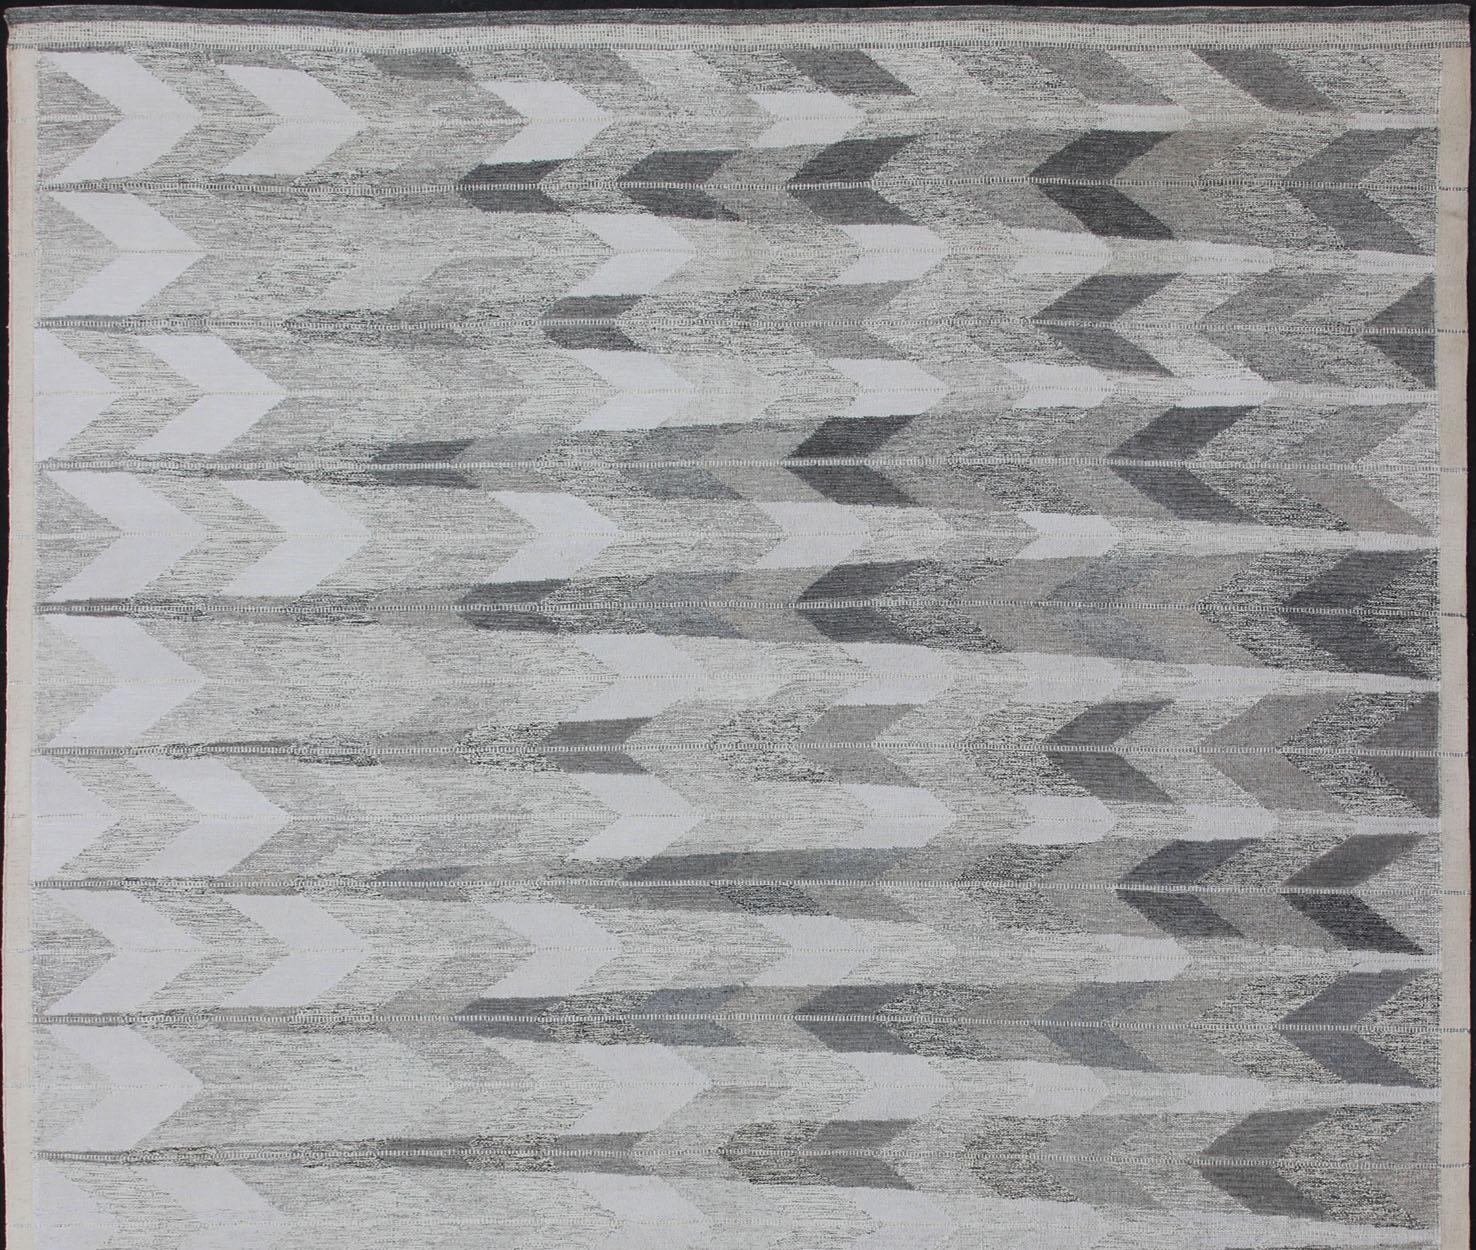 Grand tapis moderne scandinave à tissage plat / tapis suédois à tissage plat. Rug/KHN-1039-SW-105

Ce tapis scandinave à motifs à tissage plat s'inspire du travail des designers textiles suédois du début au milieu du XXe siècle. Avec un mélange